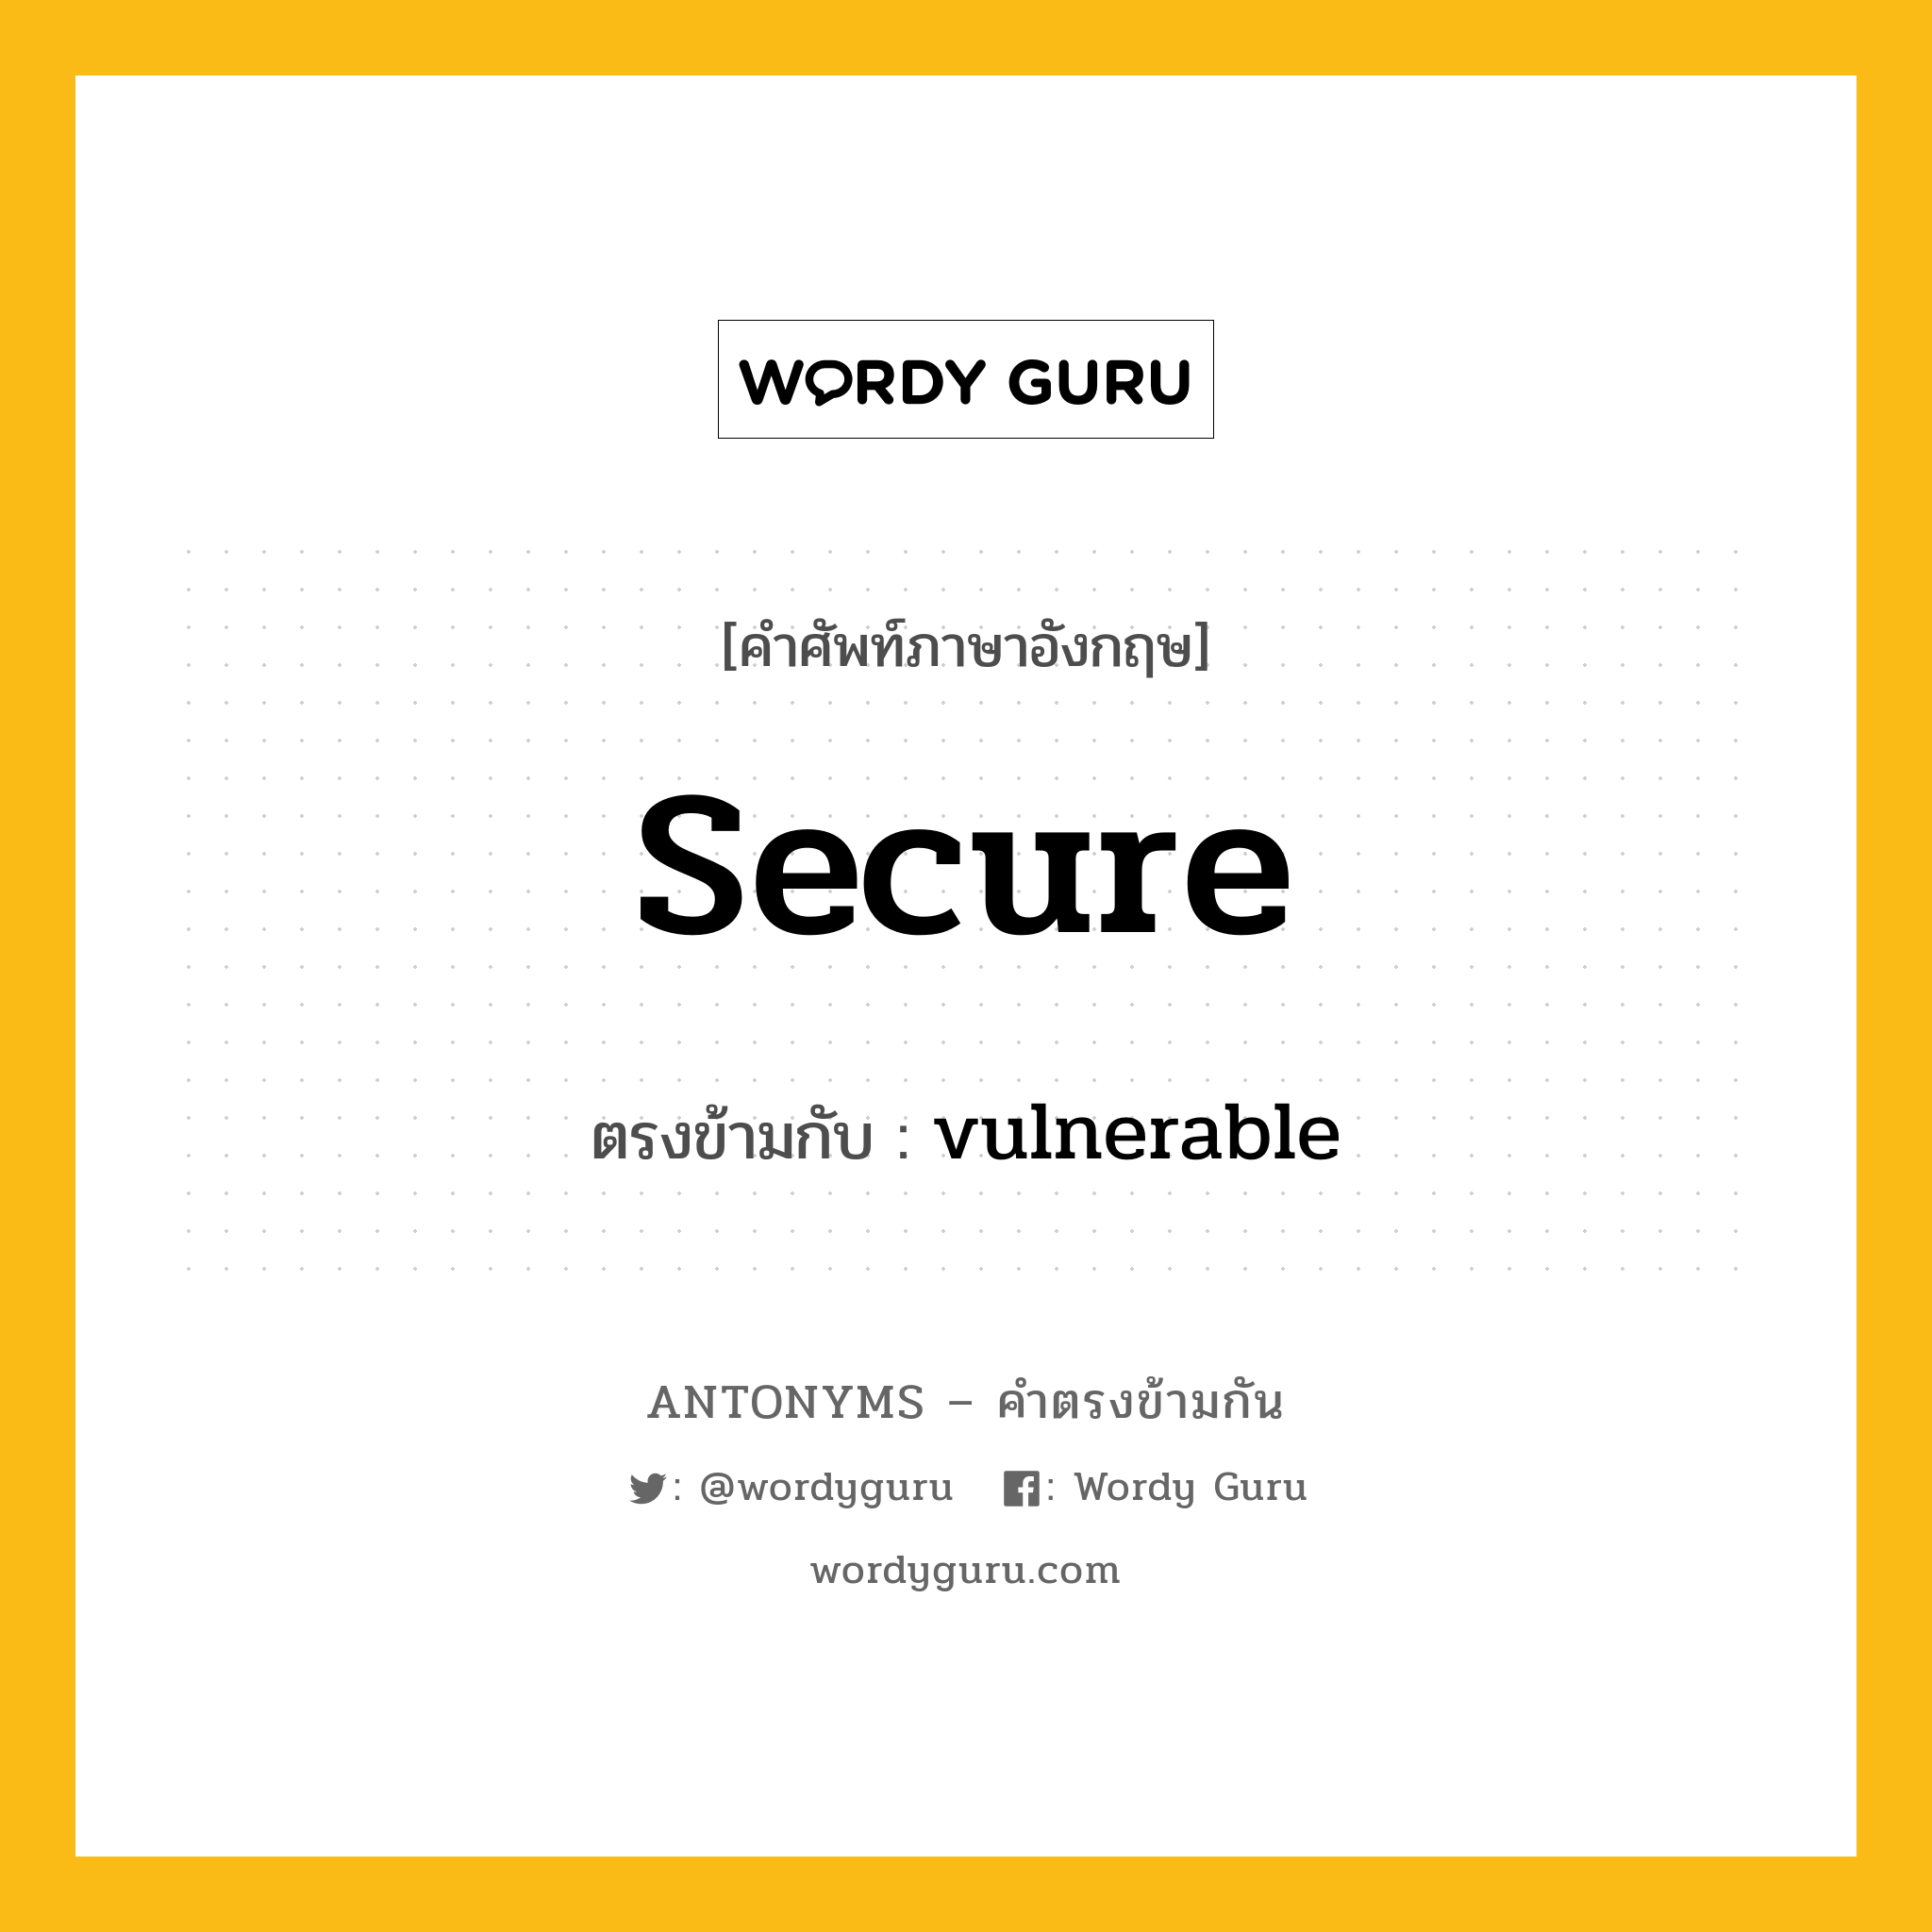 secure เป็นคำตรงข้ามกับคำไหนบ้าง?, คำศัพท์ภาษาอังกฤษ secure ตรงข้ามกับ vulnerable หมวด vulnerable